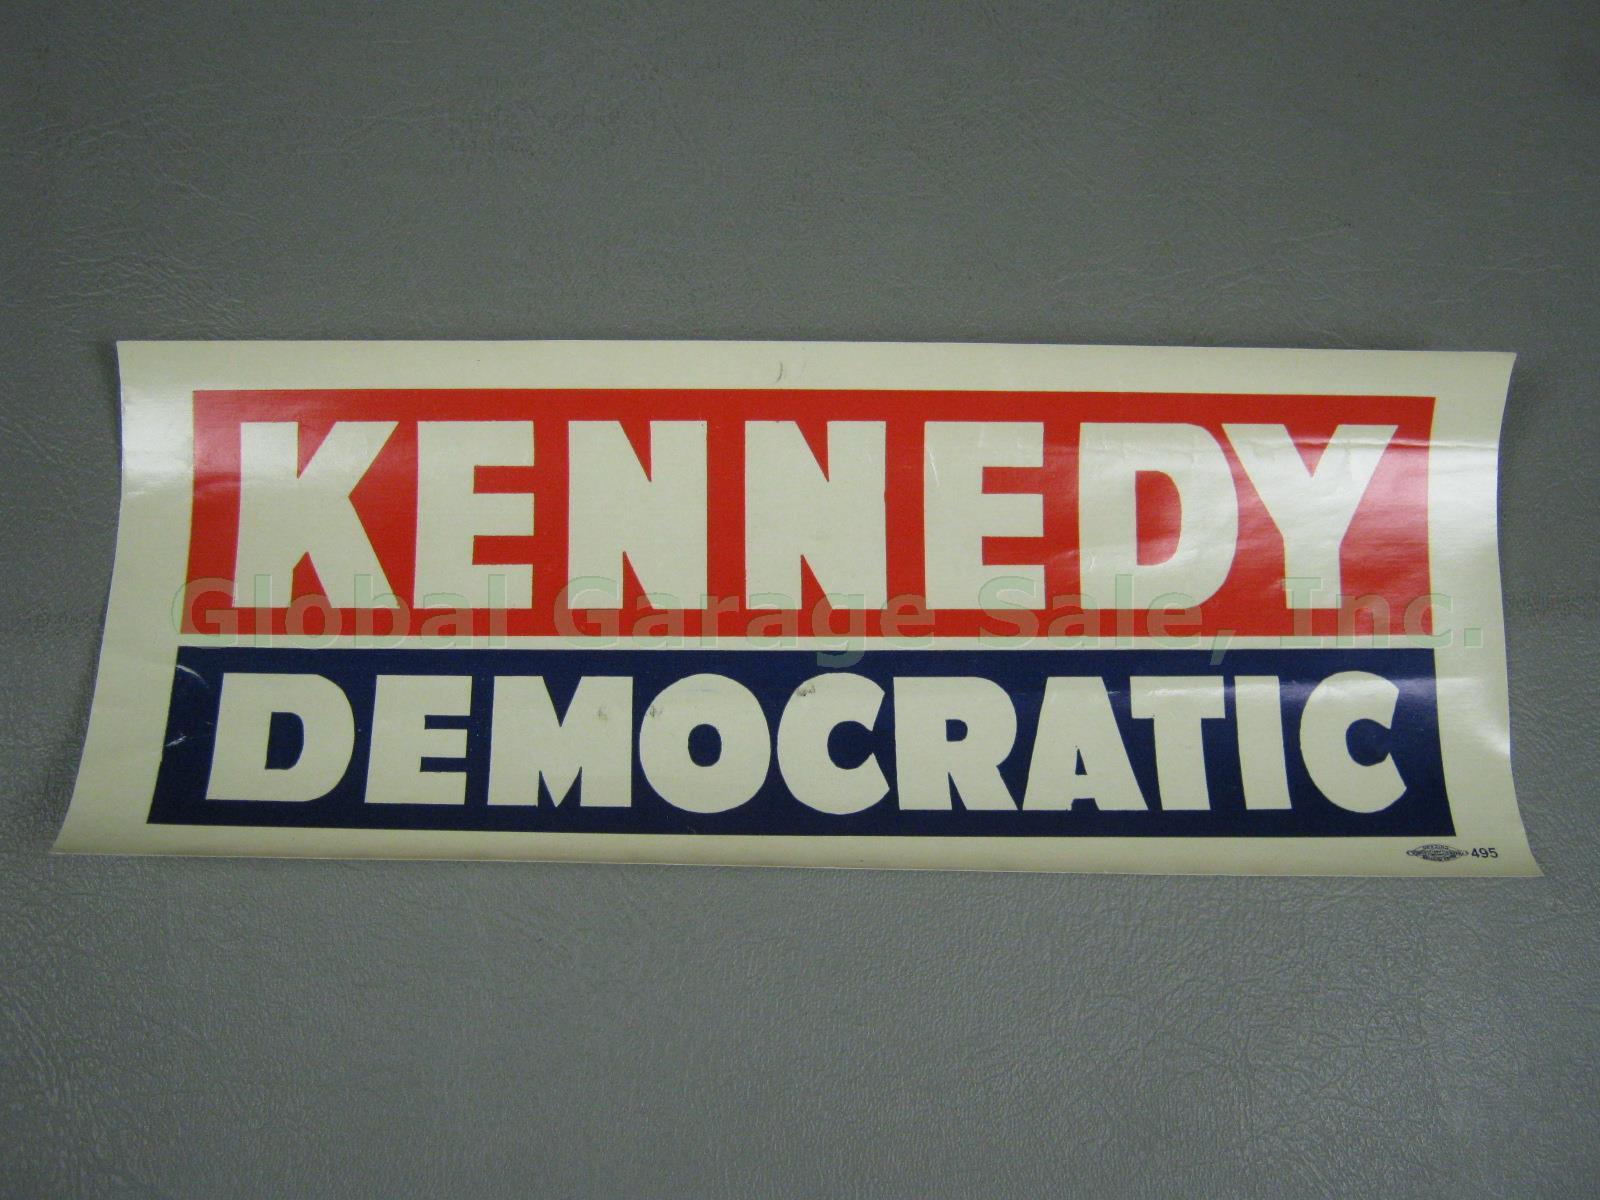 Original 1960 JFK John F Kennedy Vote Democratic Campaign Poster Bumper Sticker 5